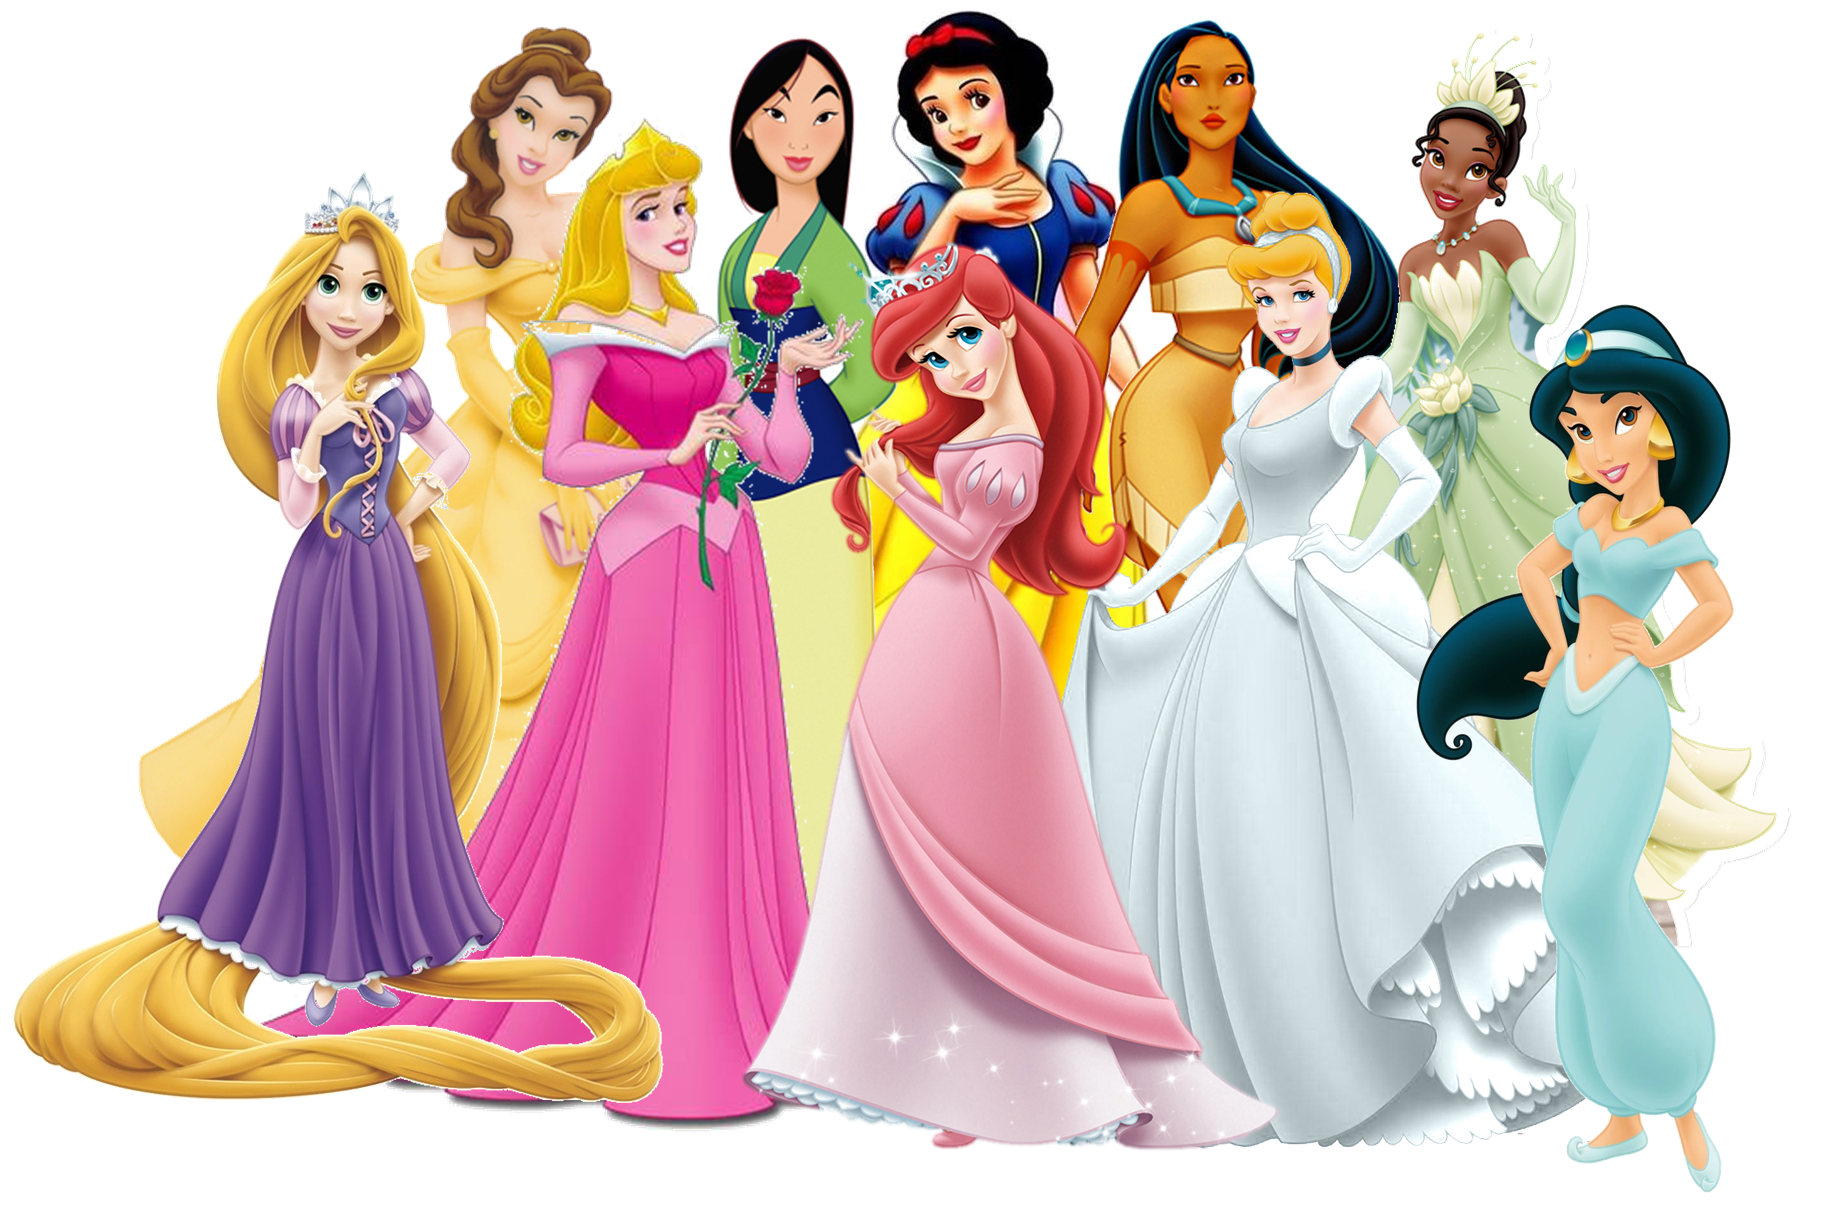 Download 21 disney-princess-iphone-wallpaper Disney-Princesses-iPhone-Wallpapers-Top-Free-Disney-.png